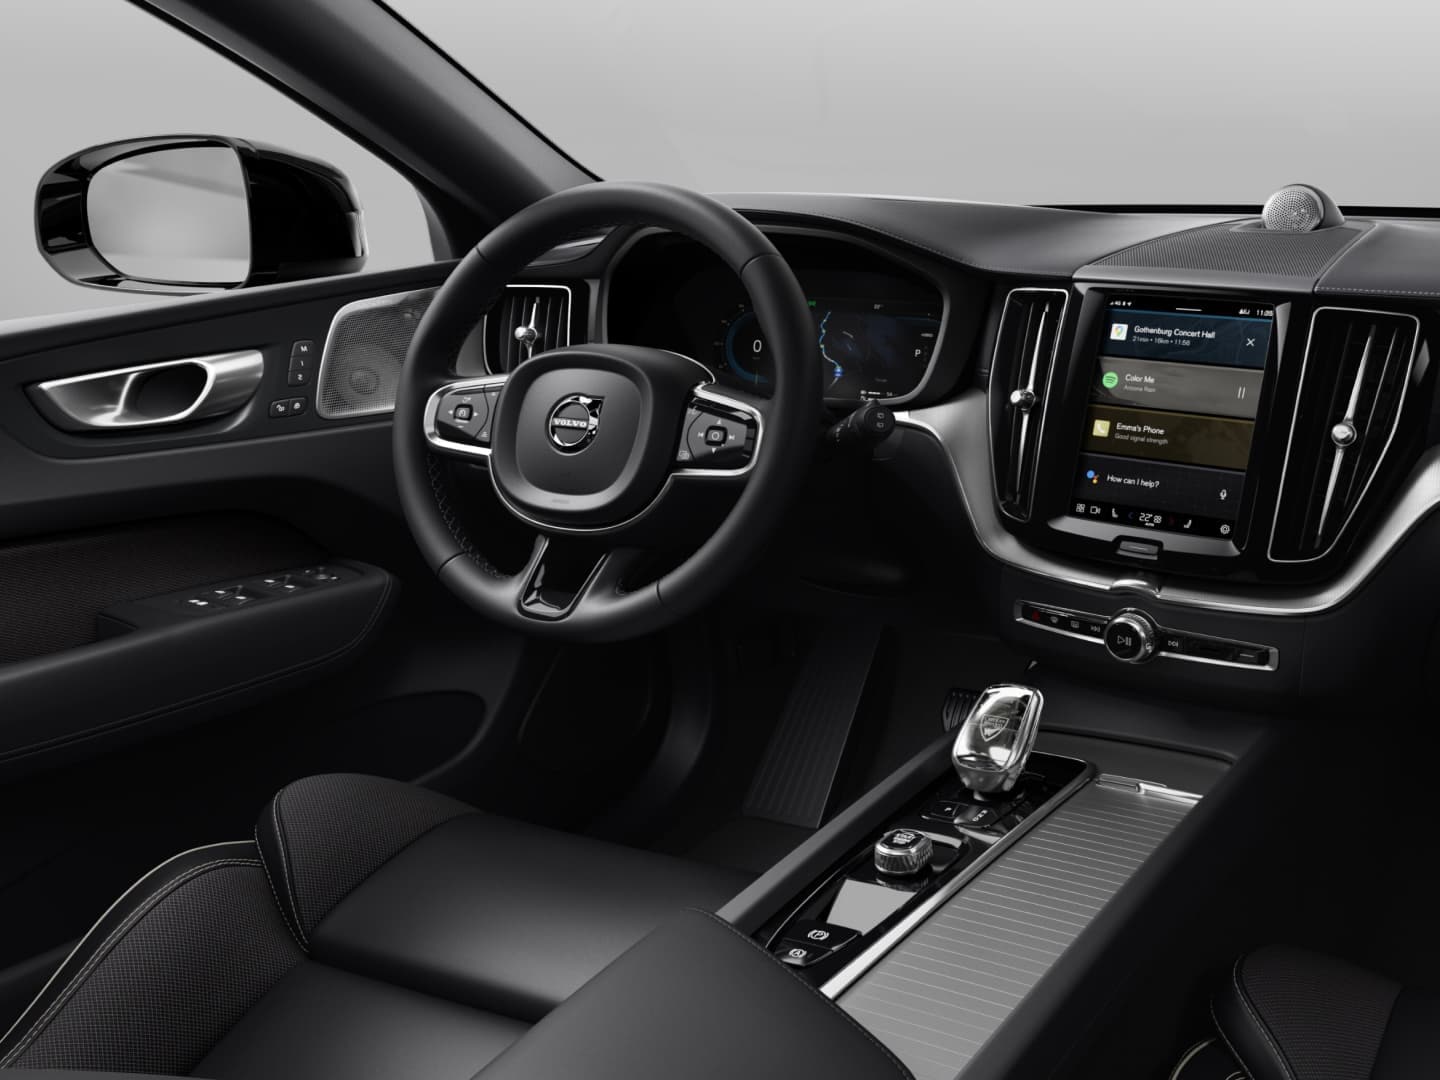 Vedere a interiorului de culoare închisă al modelului Volvo XC60 Black Edition mild hybrid.